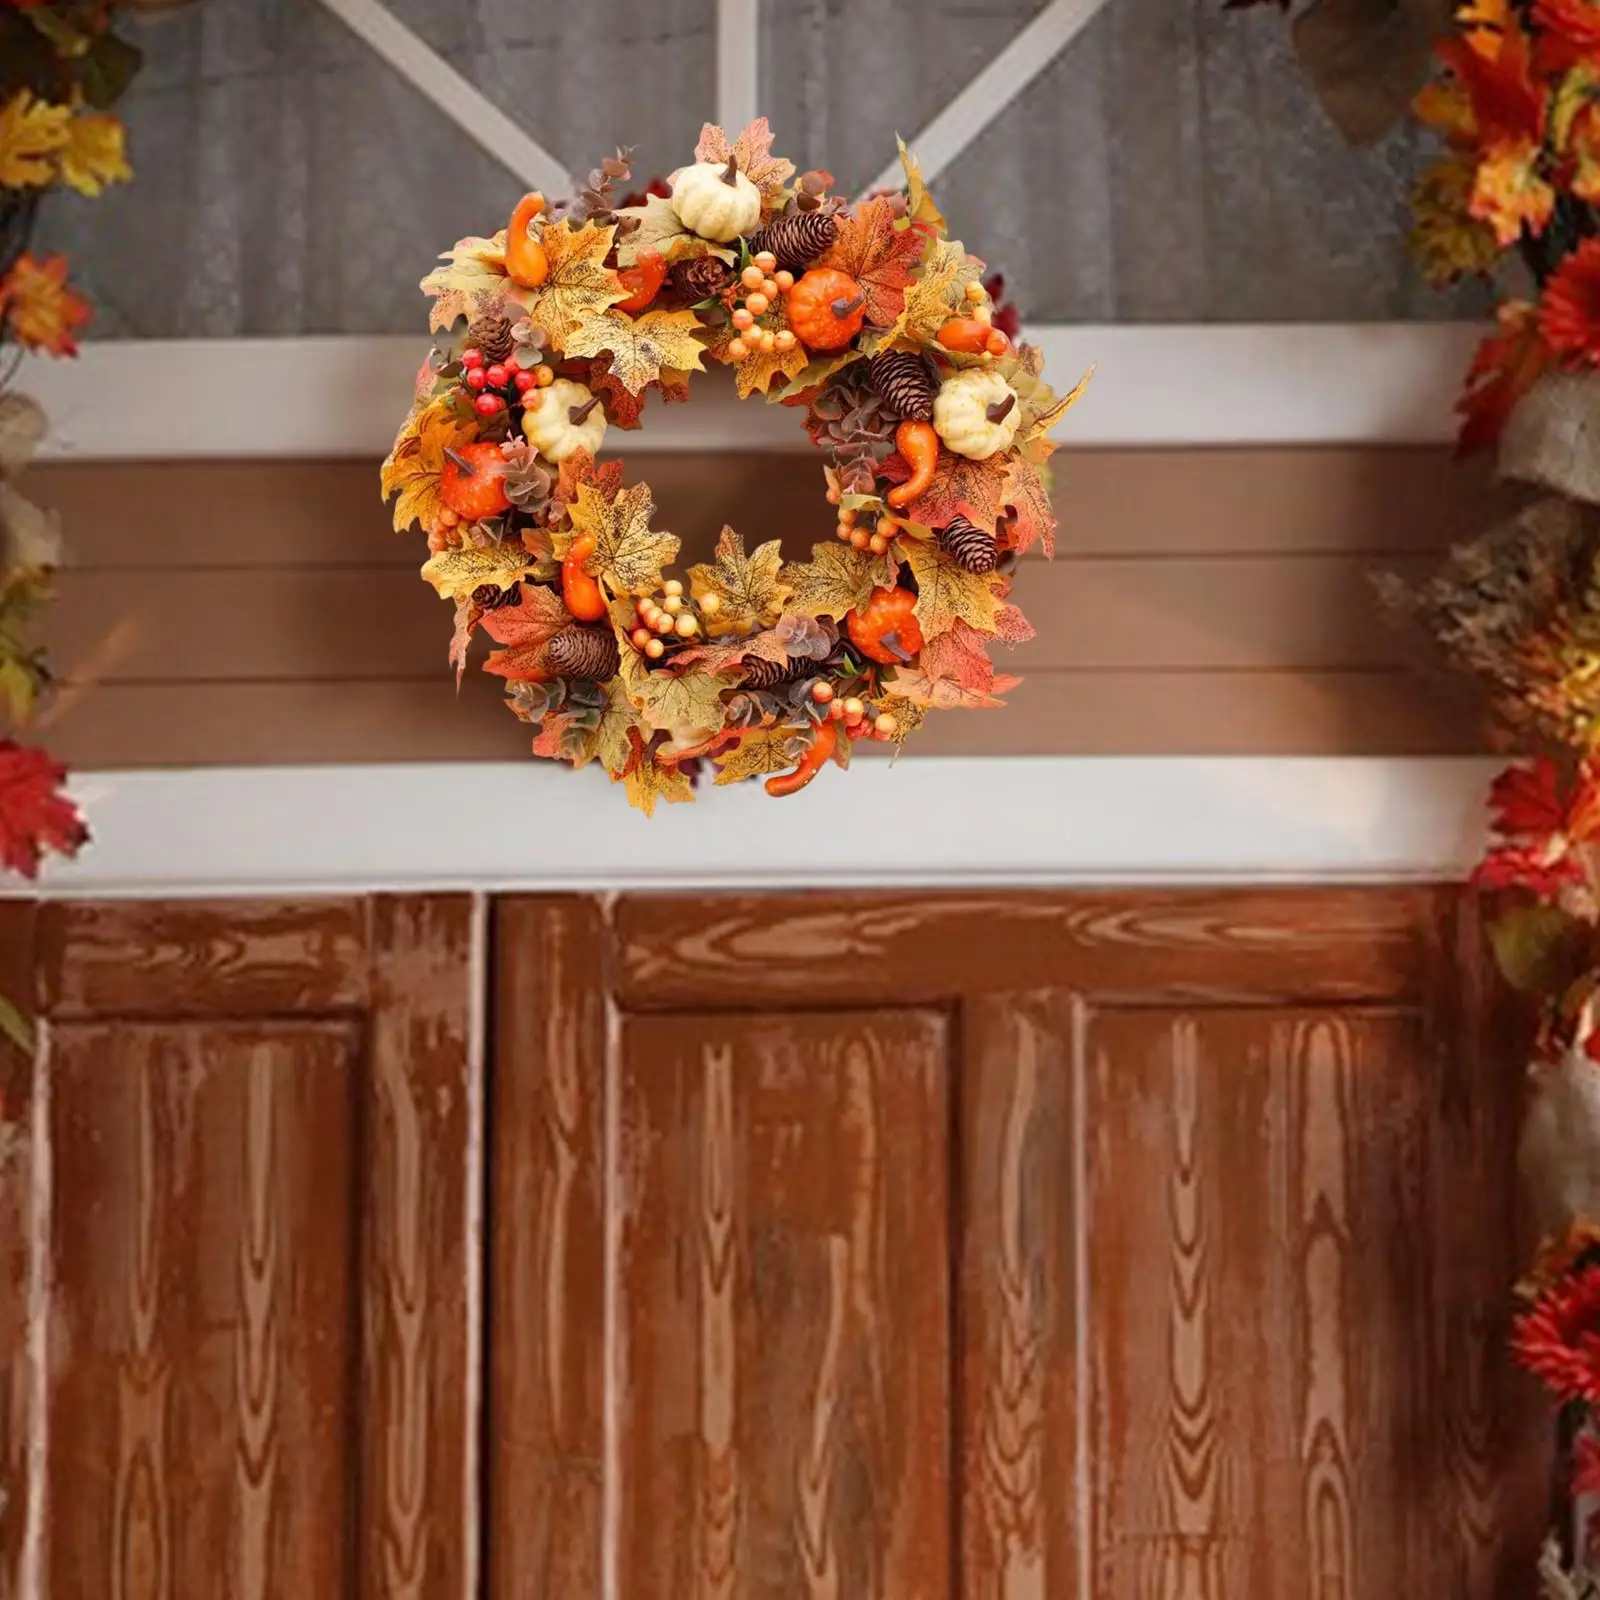 40cm Autumn Pumpkin Wreath Decor Ornament Decor Artificial, Hanging for Garden Wedding Home Halloween Farmhouse